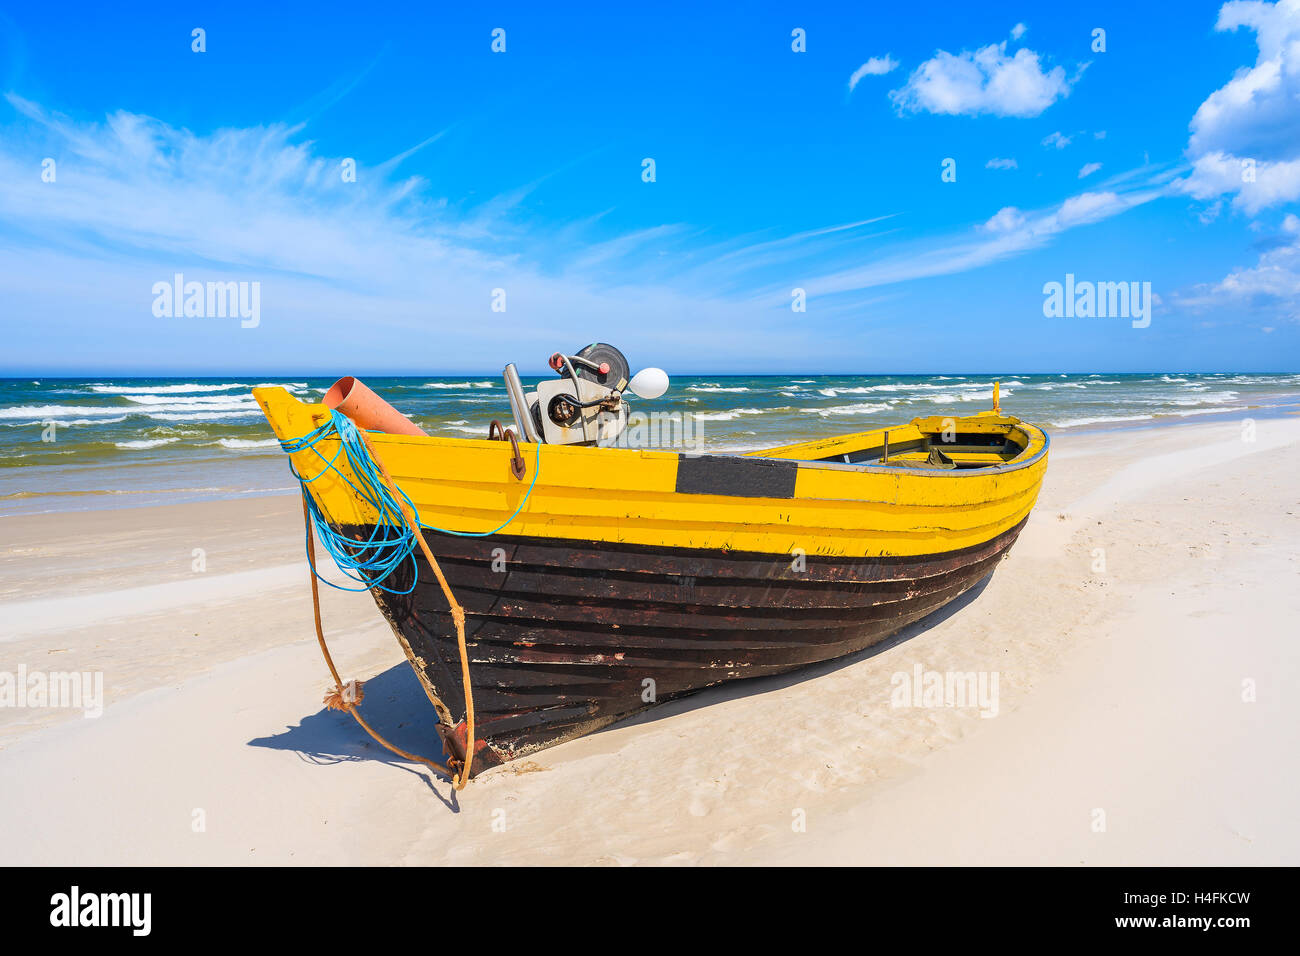 Bateau de pêche colorés sur la plage de sable de la mer Baltique, Pologne Banque D'Images